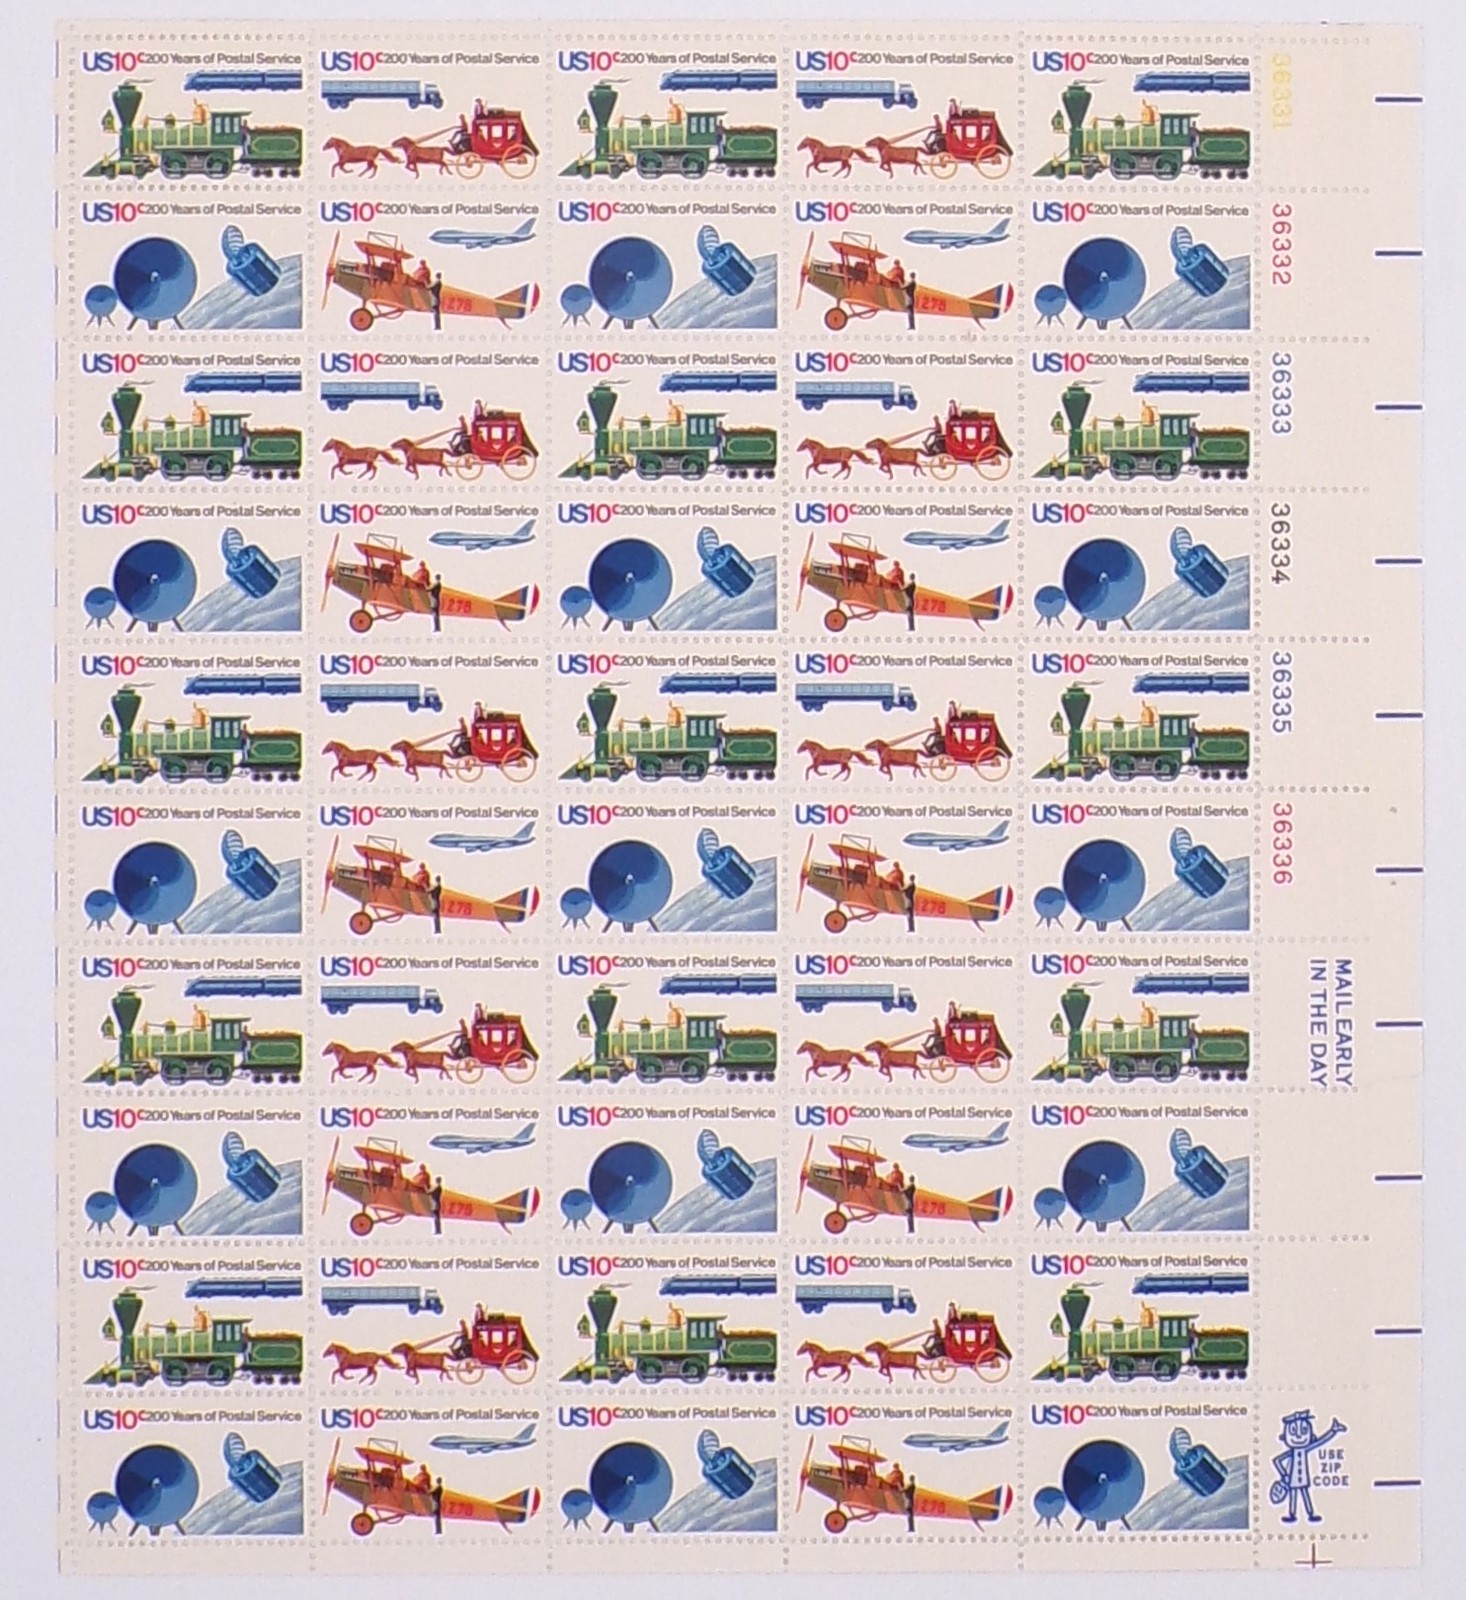 United States Stamp Sheet US 1572-75 1975 10c US Postal Service Bicentennial - $29.99